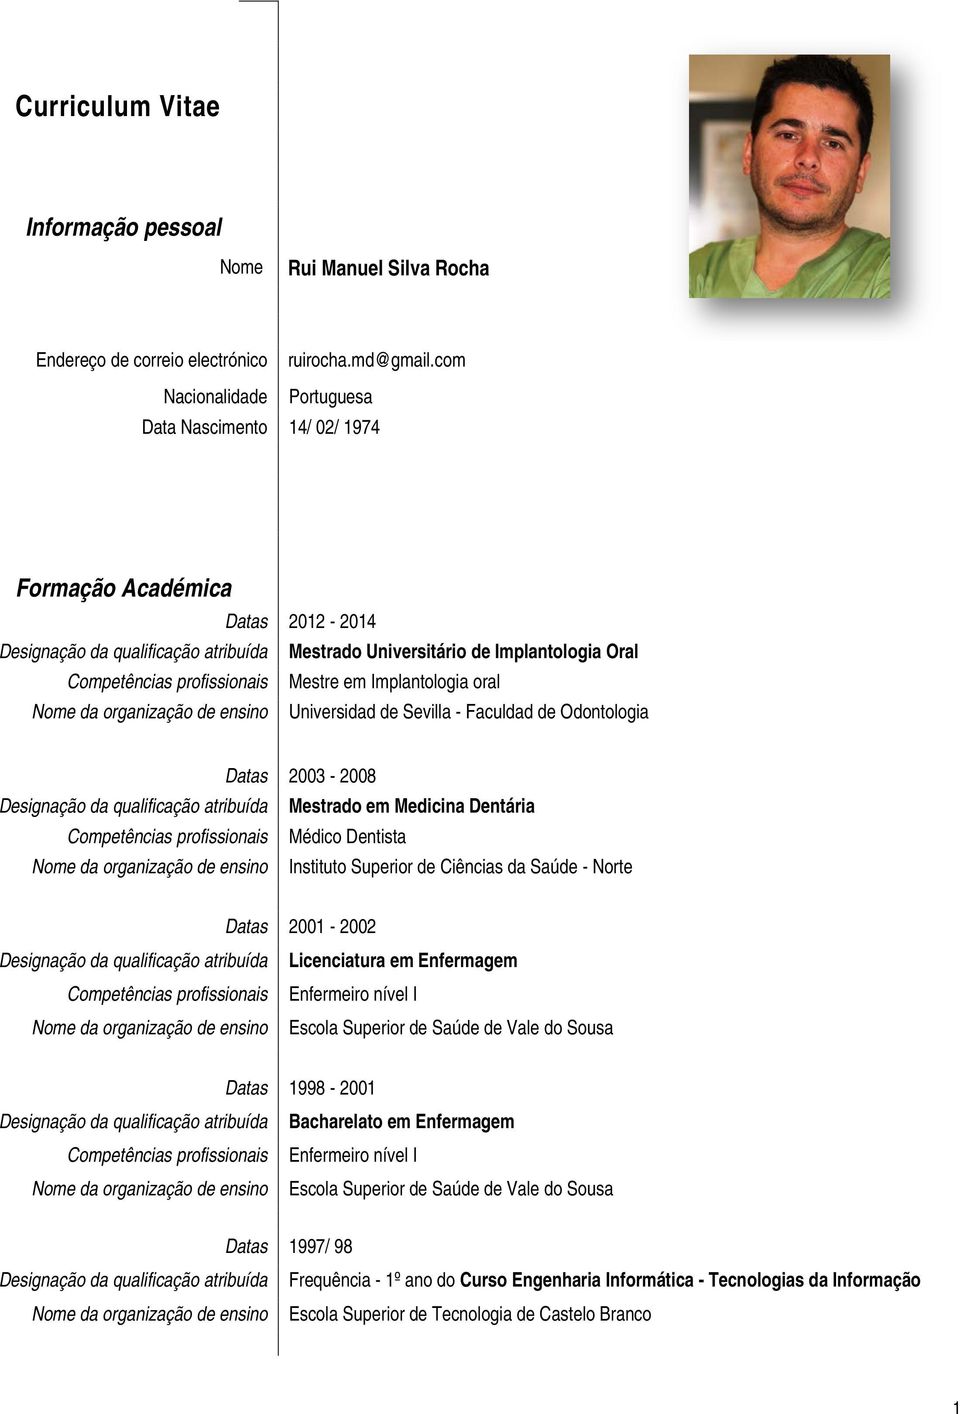 Mestre em Implantologia oral Nome da organização de ensino Universidad de Sevilla - Faculdad de Odontologia 2003-2008 Designação da qualificação atribuída Mestrado em Medicina Dentária Competências